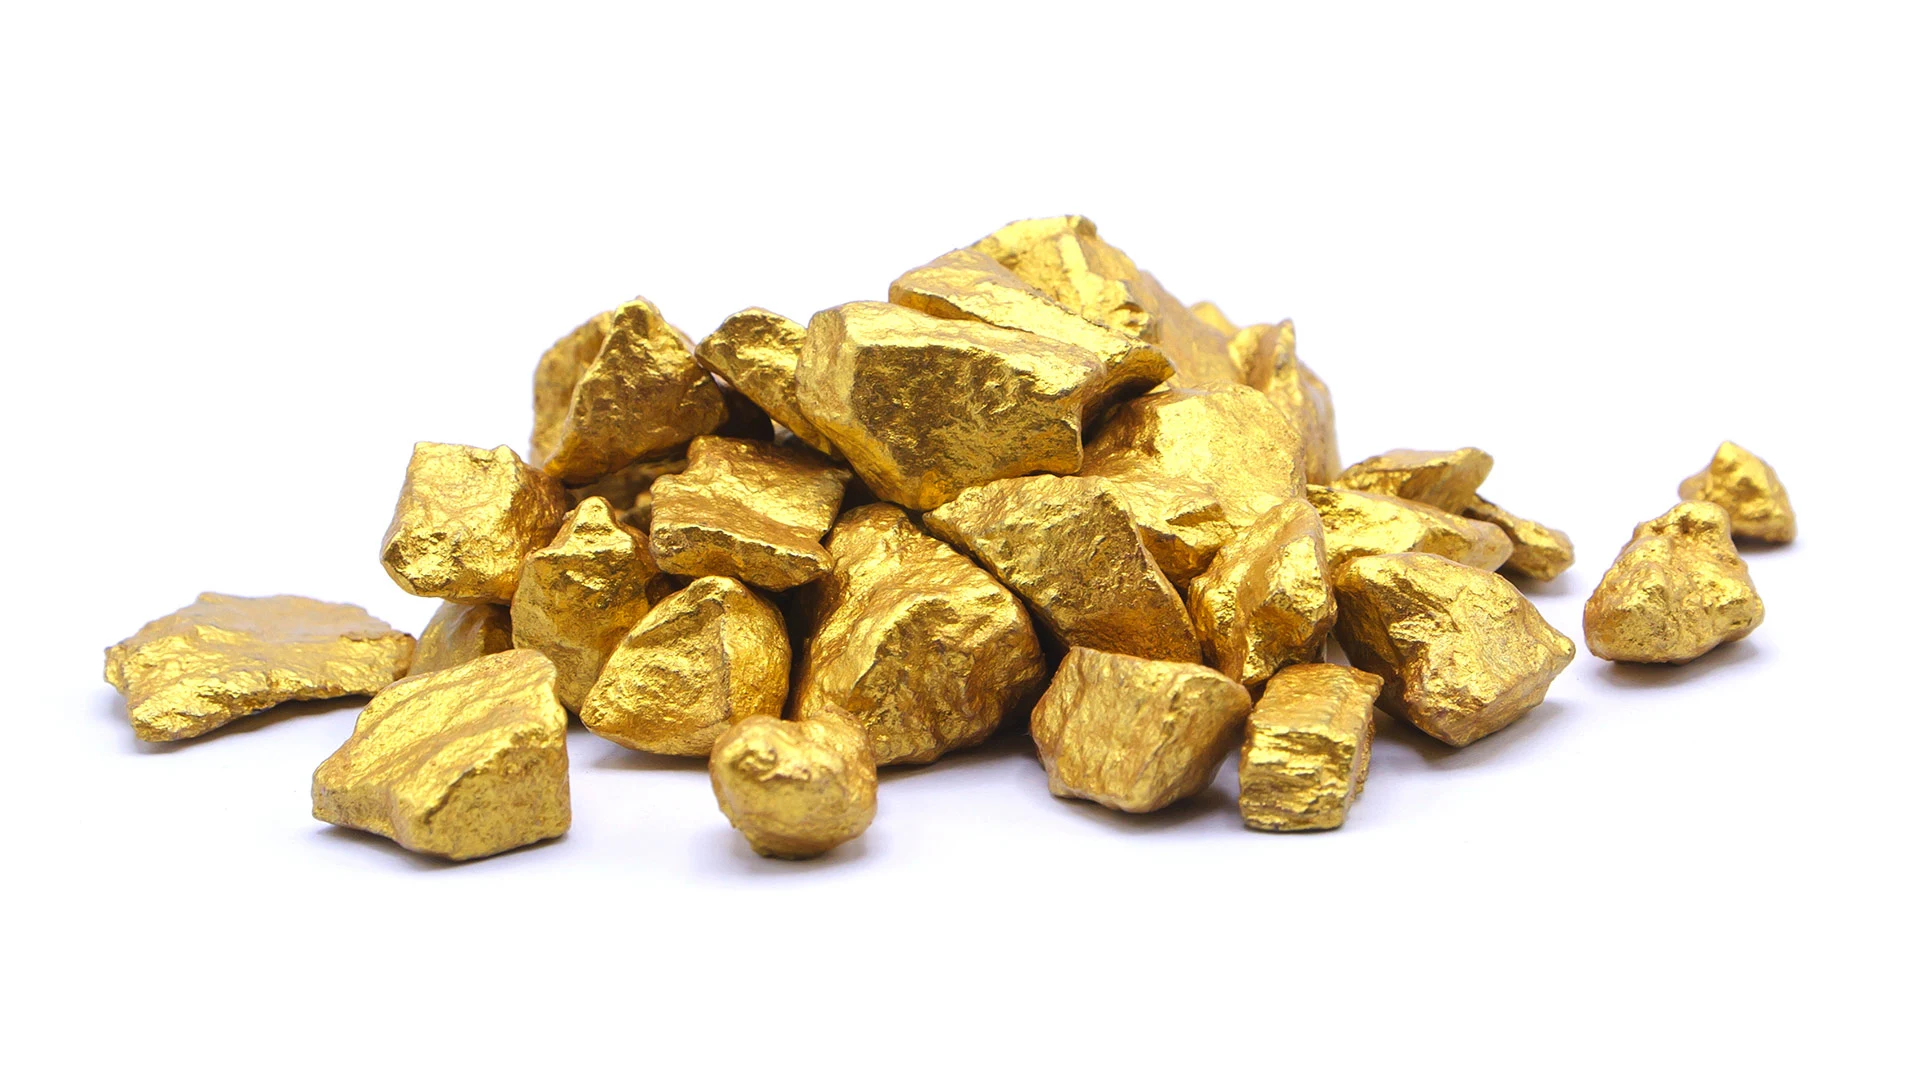 Newmont, Barrick, Gold Fields – warum die größten Goldschürfer durchstarten sollten  (Foto: Shutterstock)